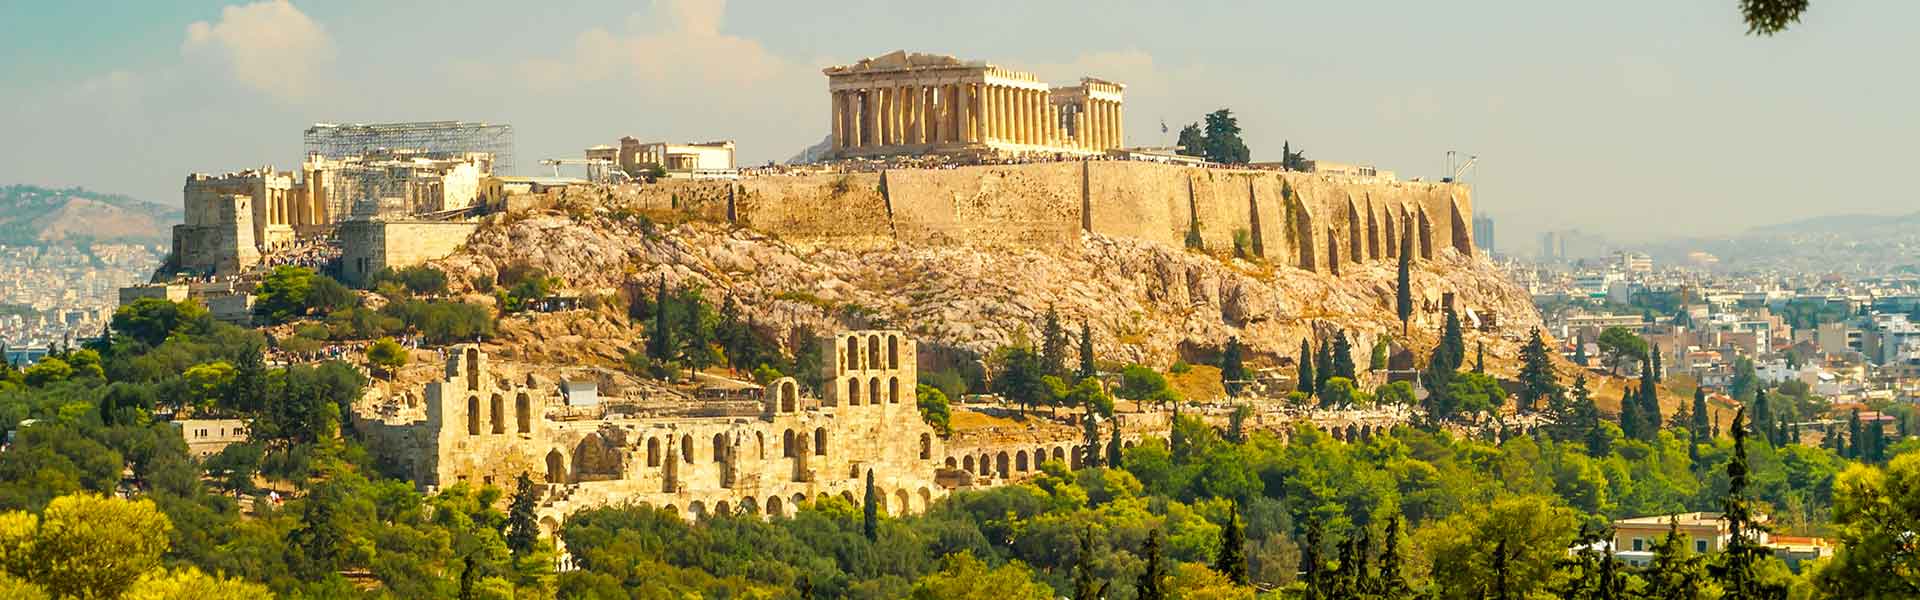 Les 10 plus beaux sites archéologiques